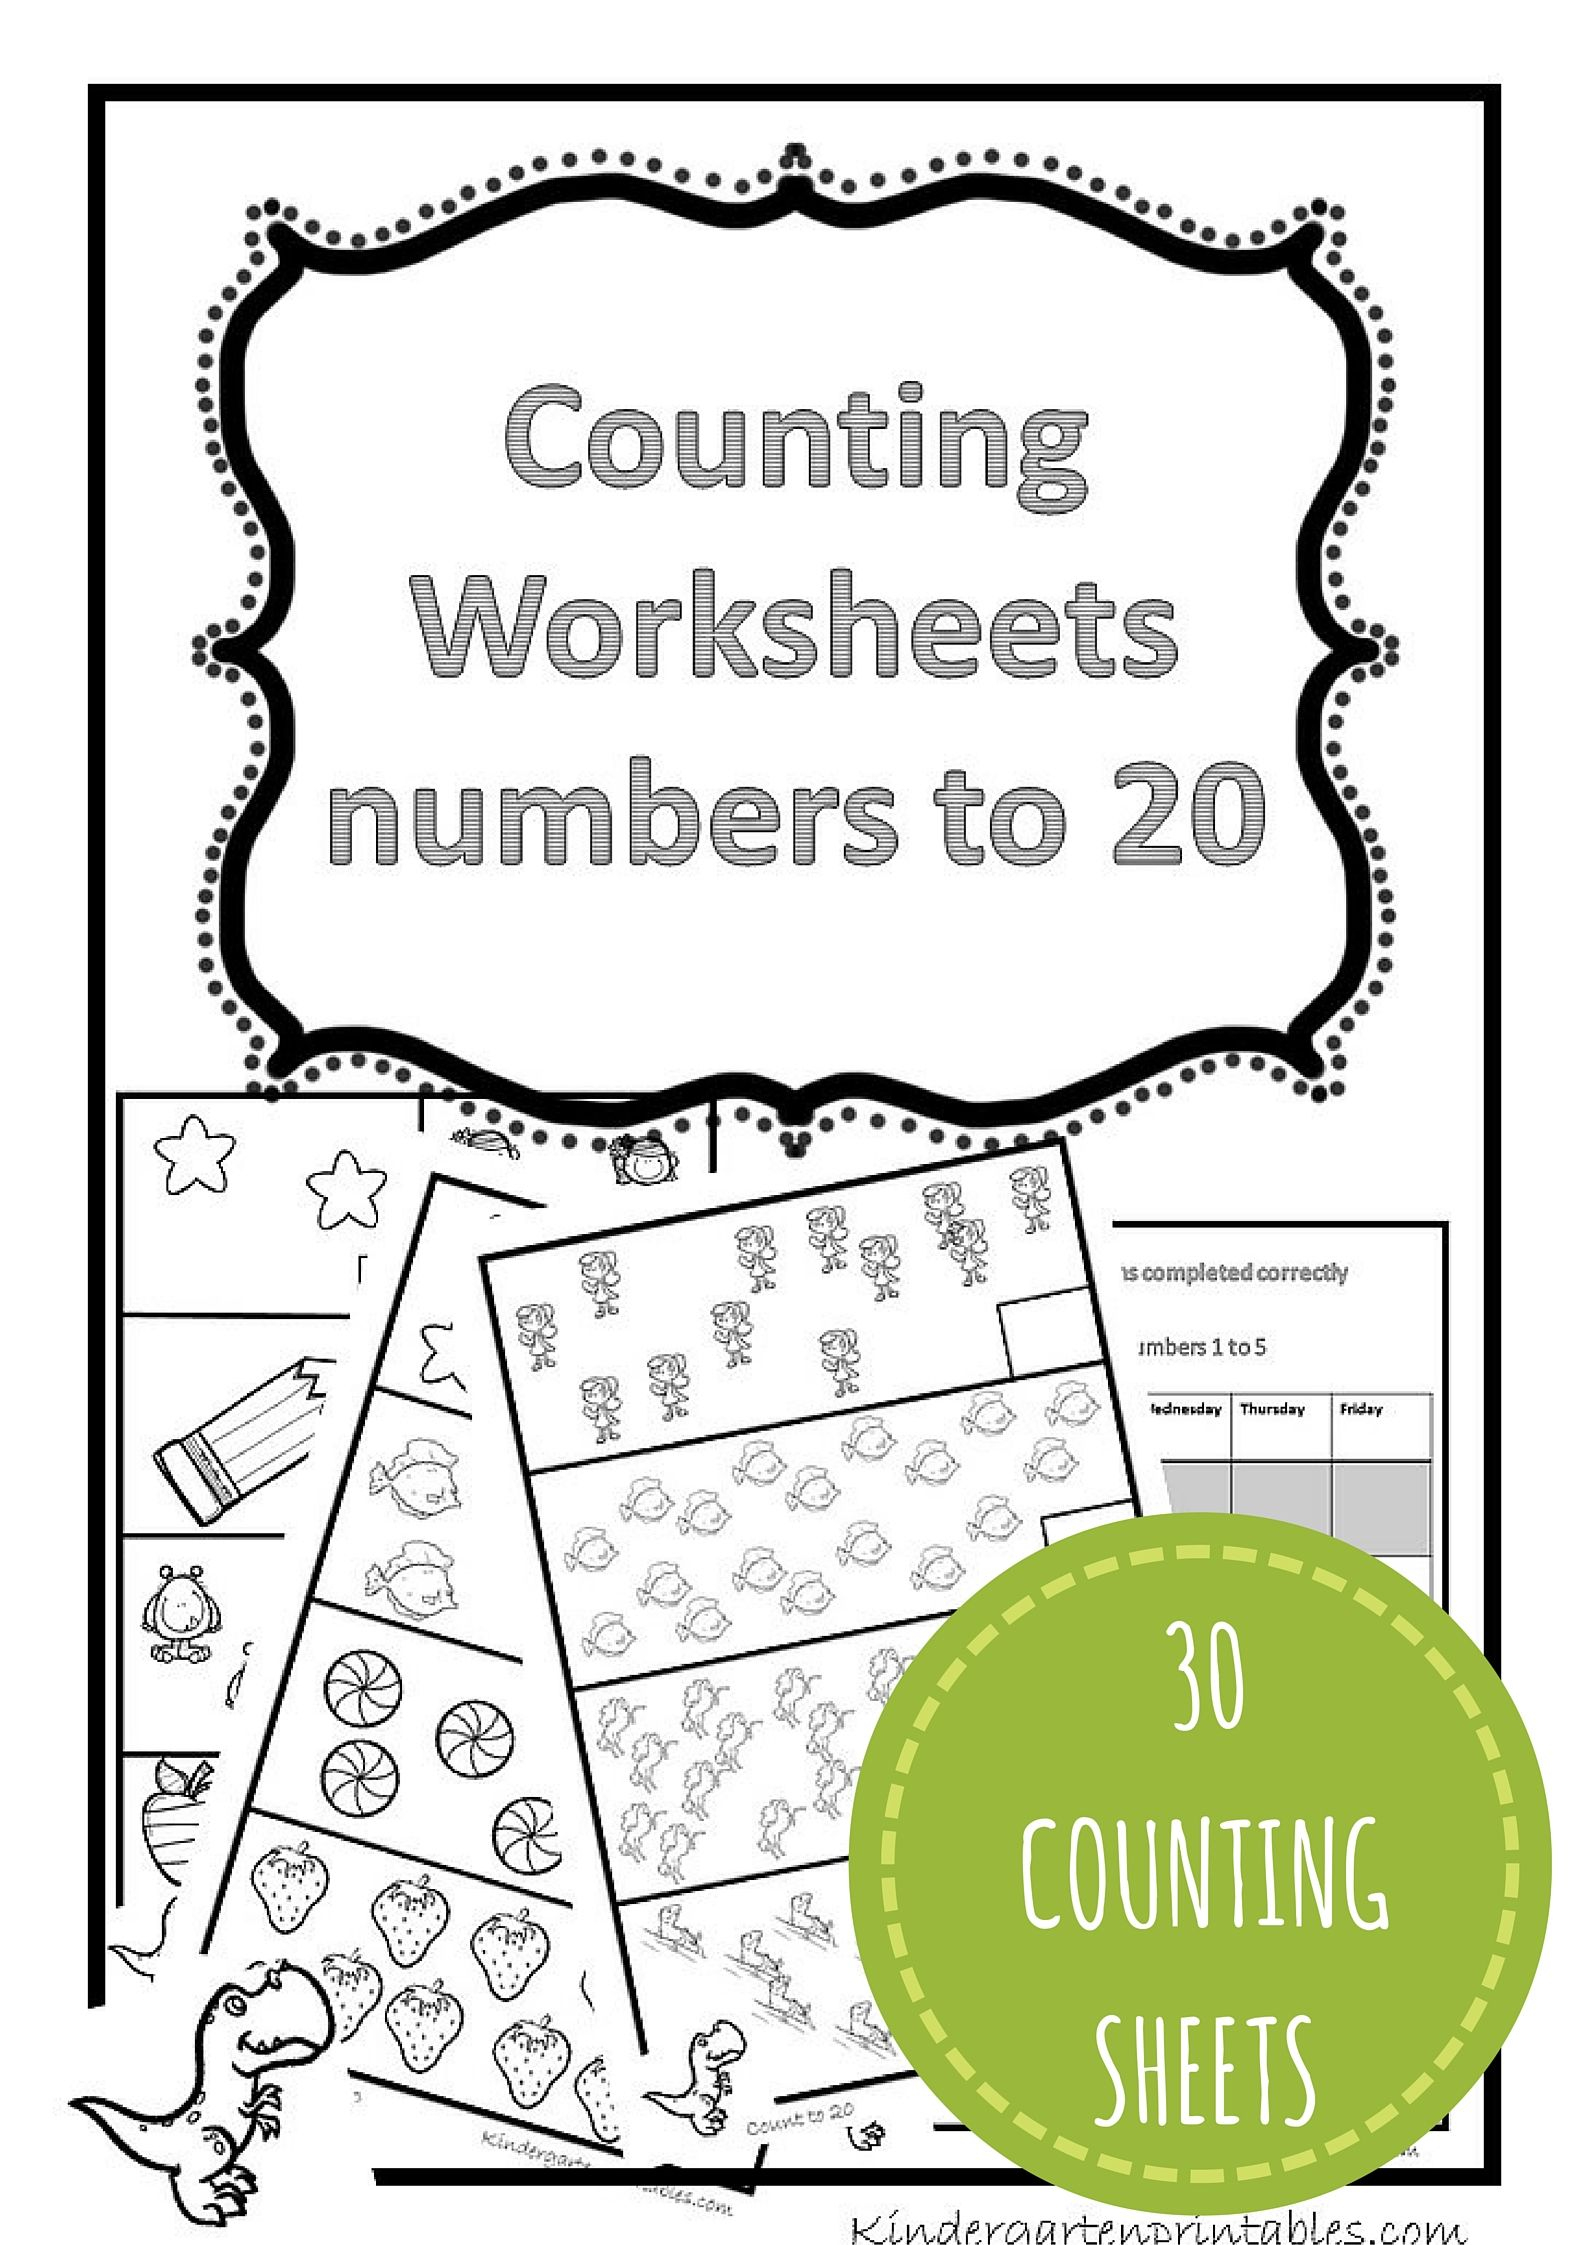 Counting Worksheets 1-20 Free Printable Workbook Counting Worksheets - Free Printable Counting Worksheets 1 20